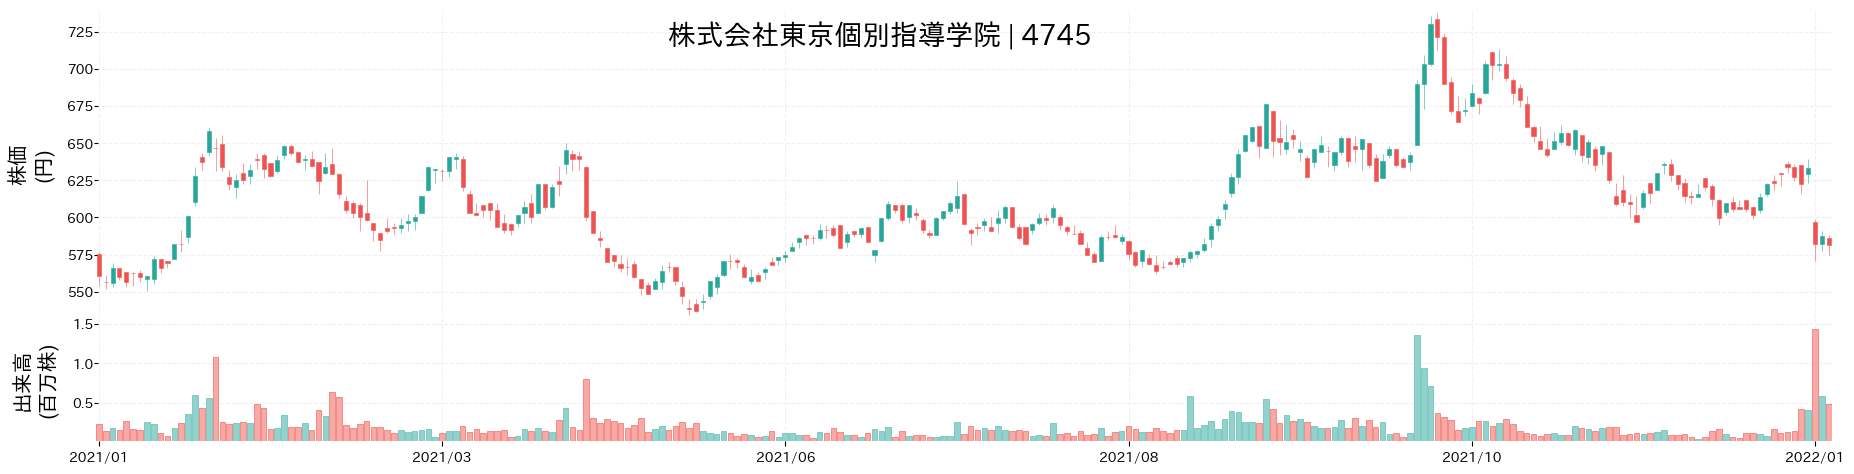 東京個別指導学院の株価推移(2021)